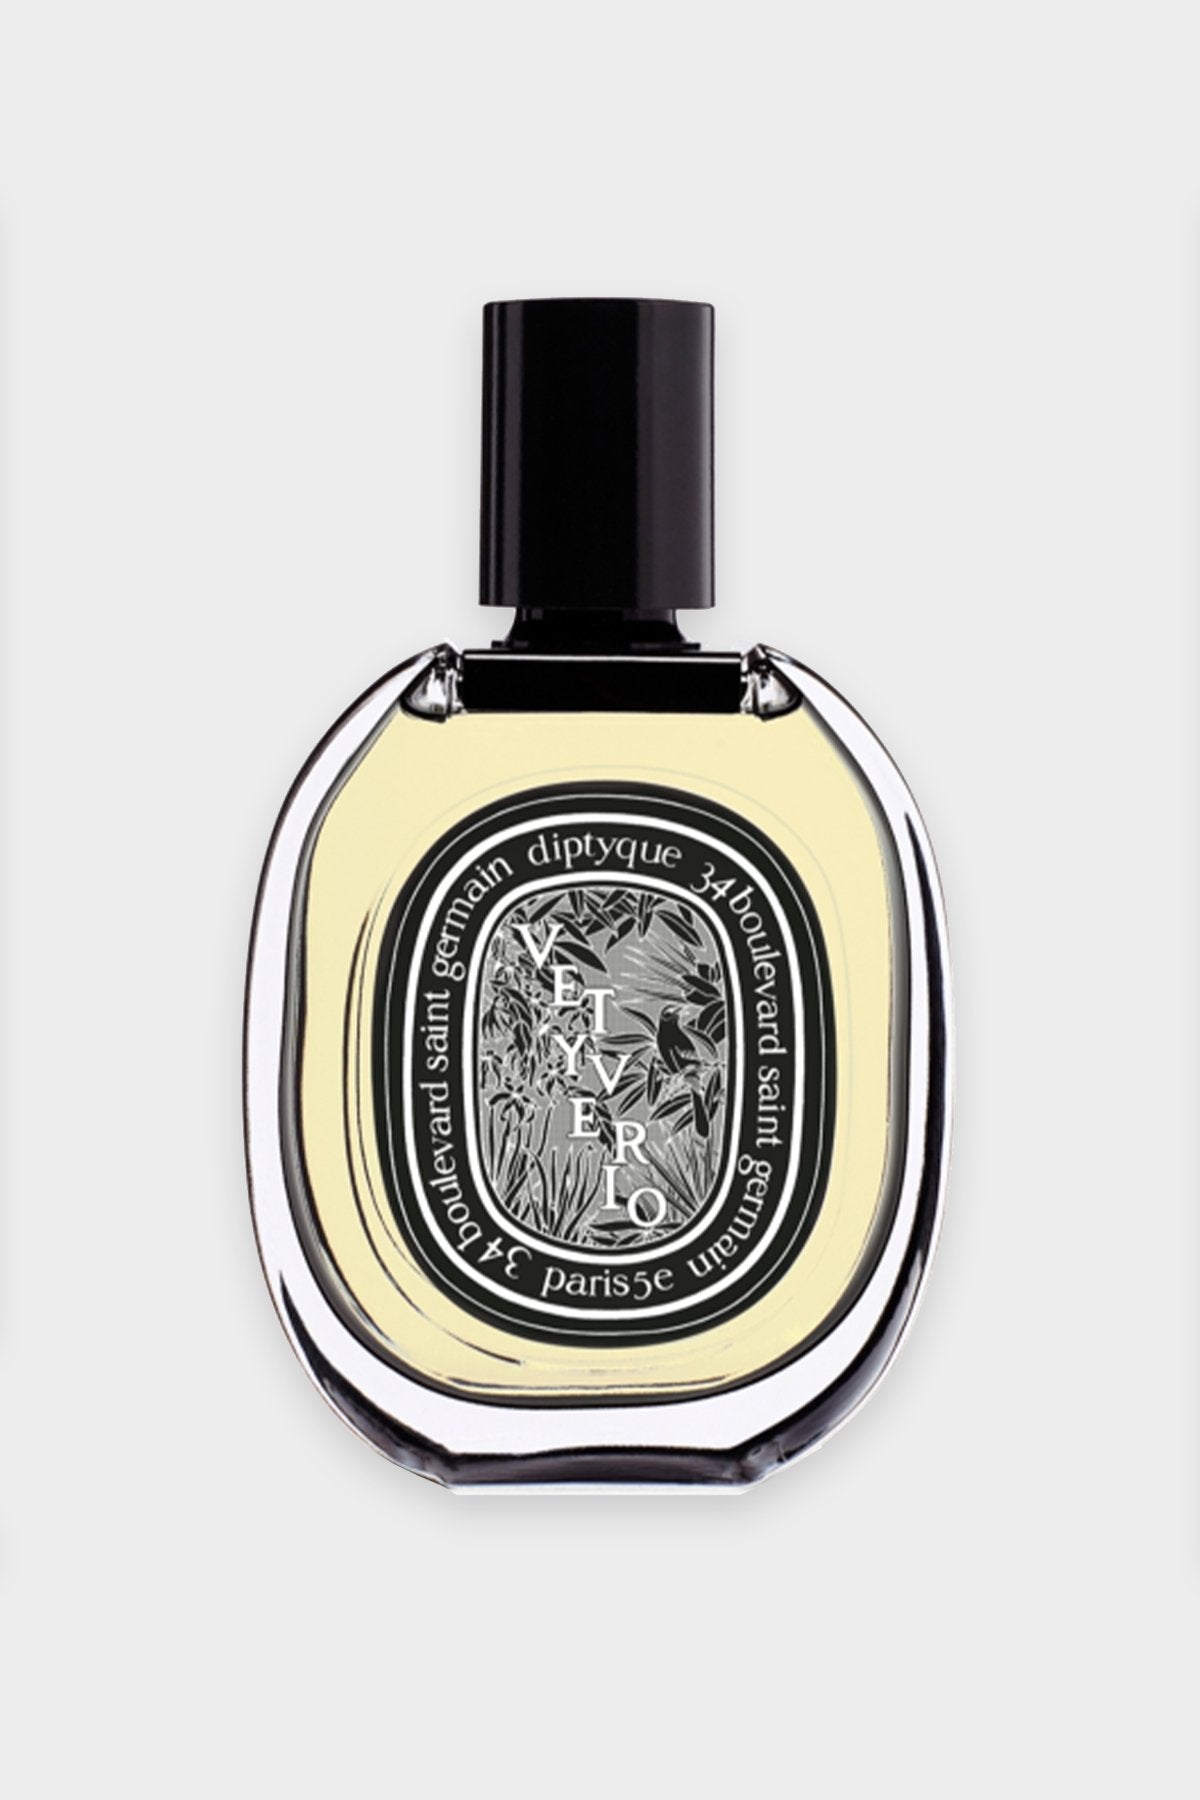 Vetyverio Eau de Parfum 2.5 fl.oz - shop-olivia.com